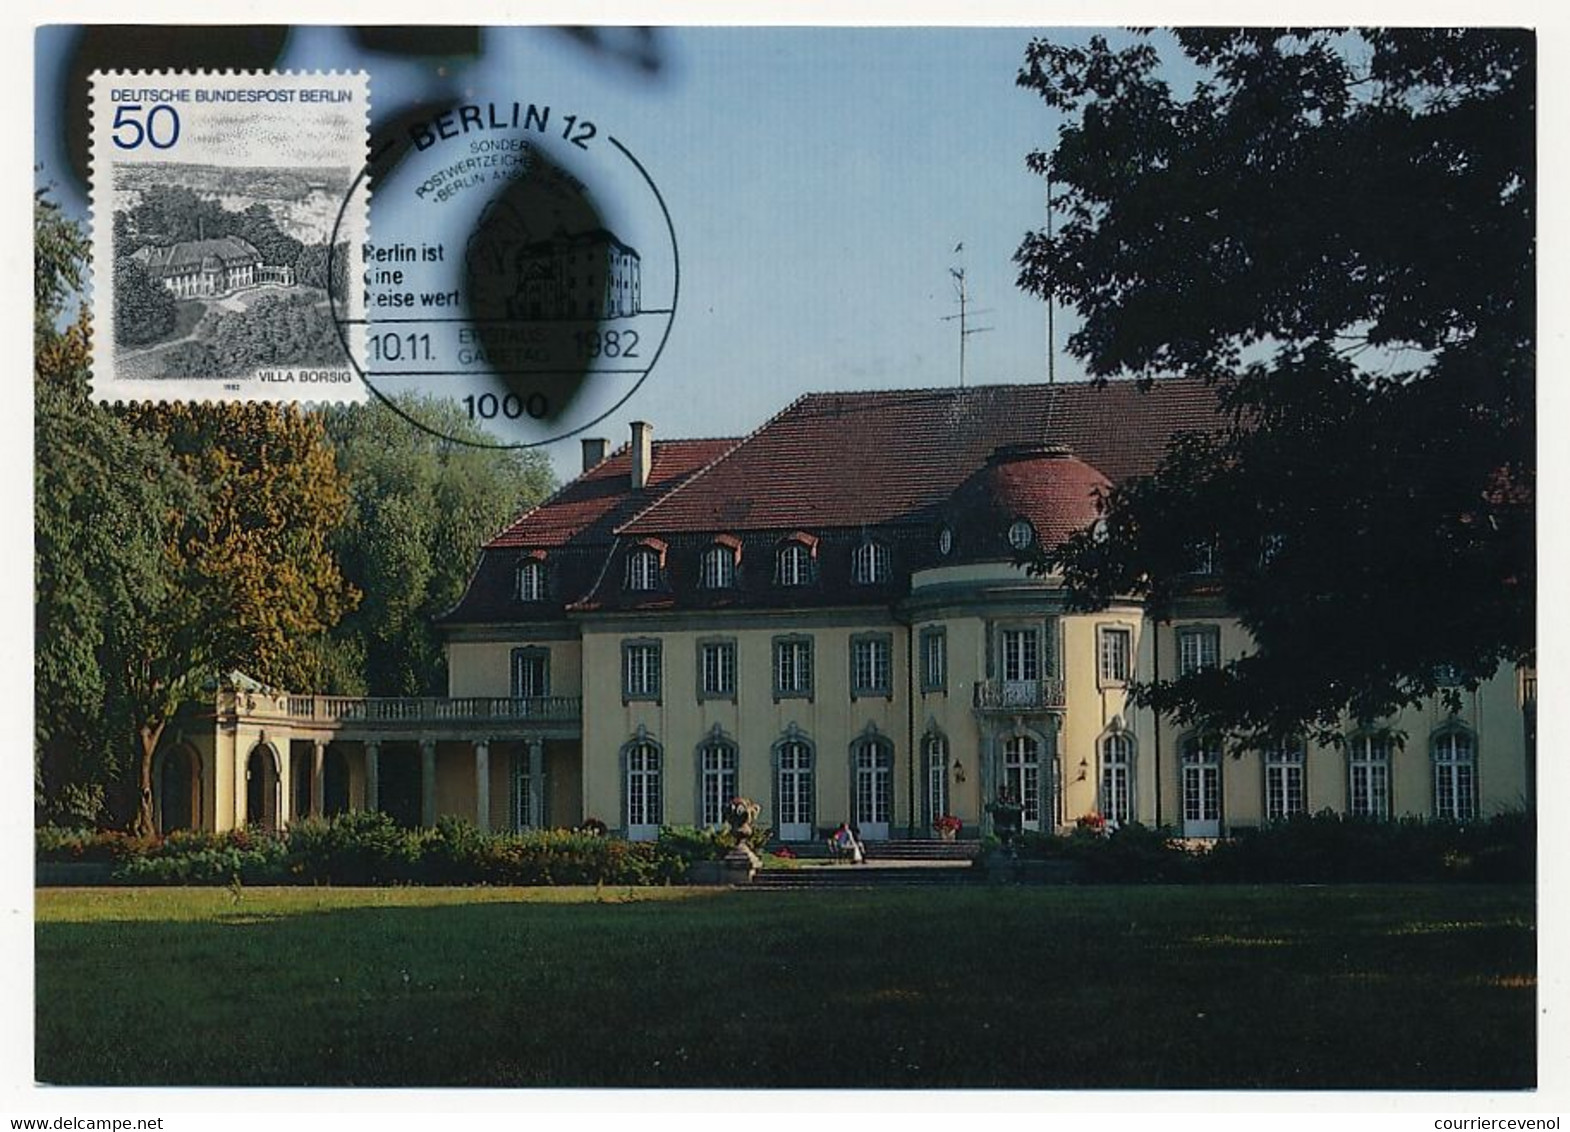 ALLEMAGNE BERLIN - Carte Maximum - Villa Borsig - 10/11/1982 - Cartes-Maximum (CM)